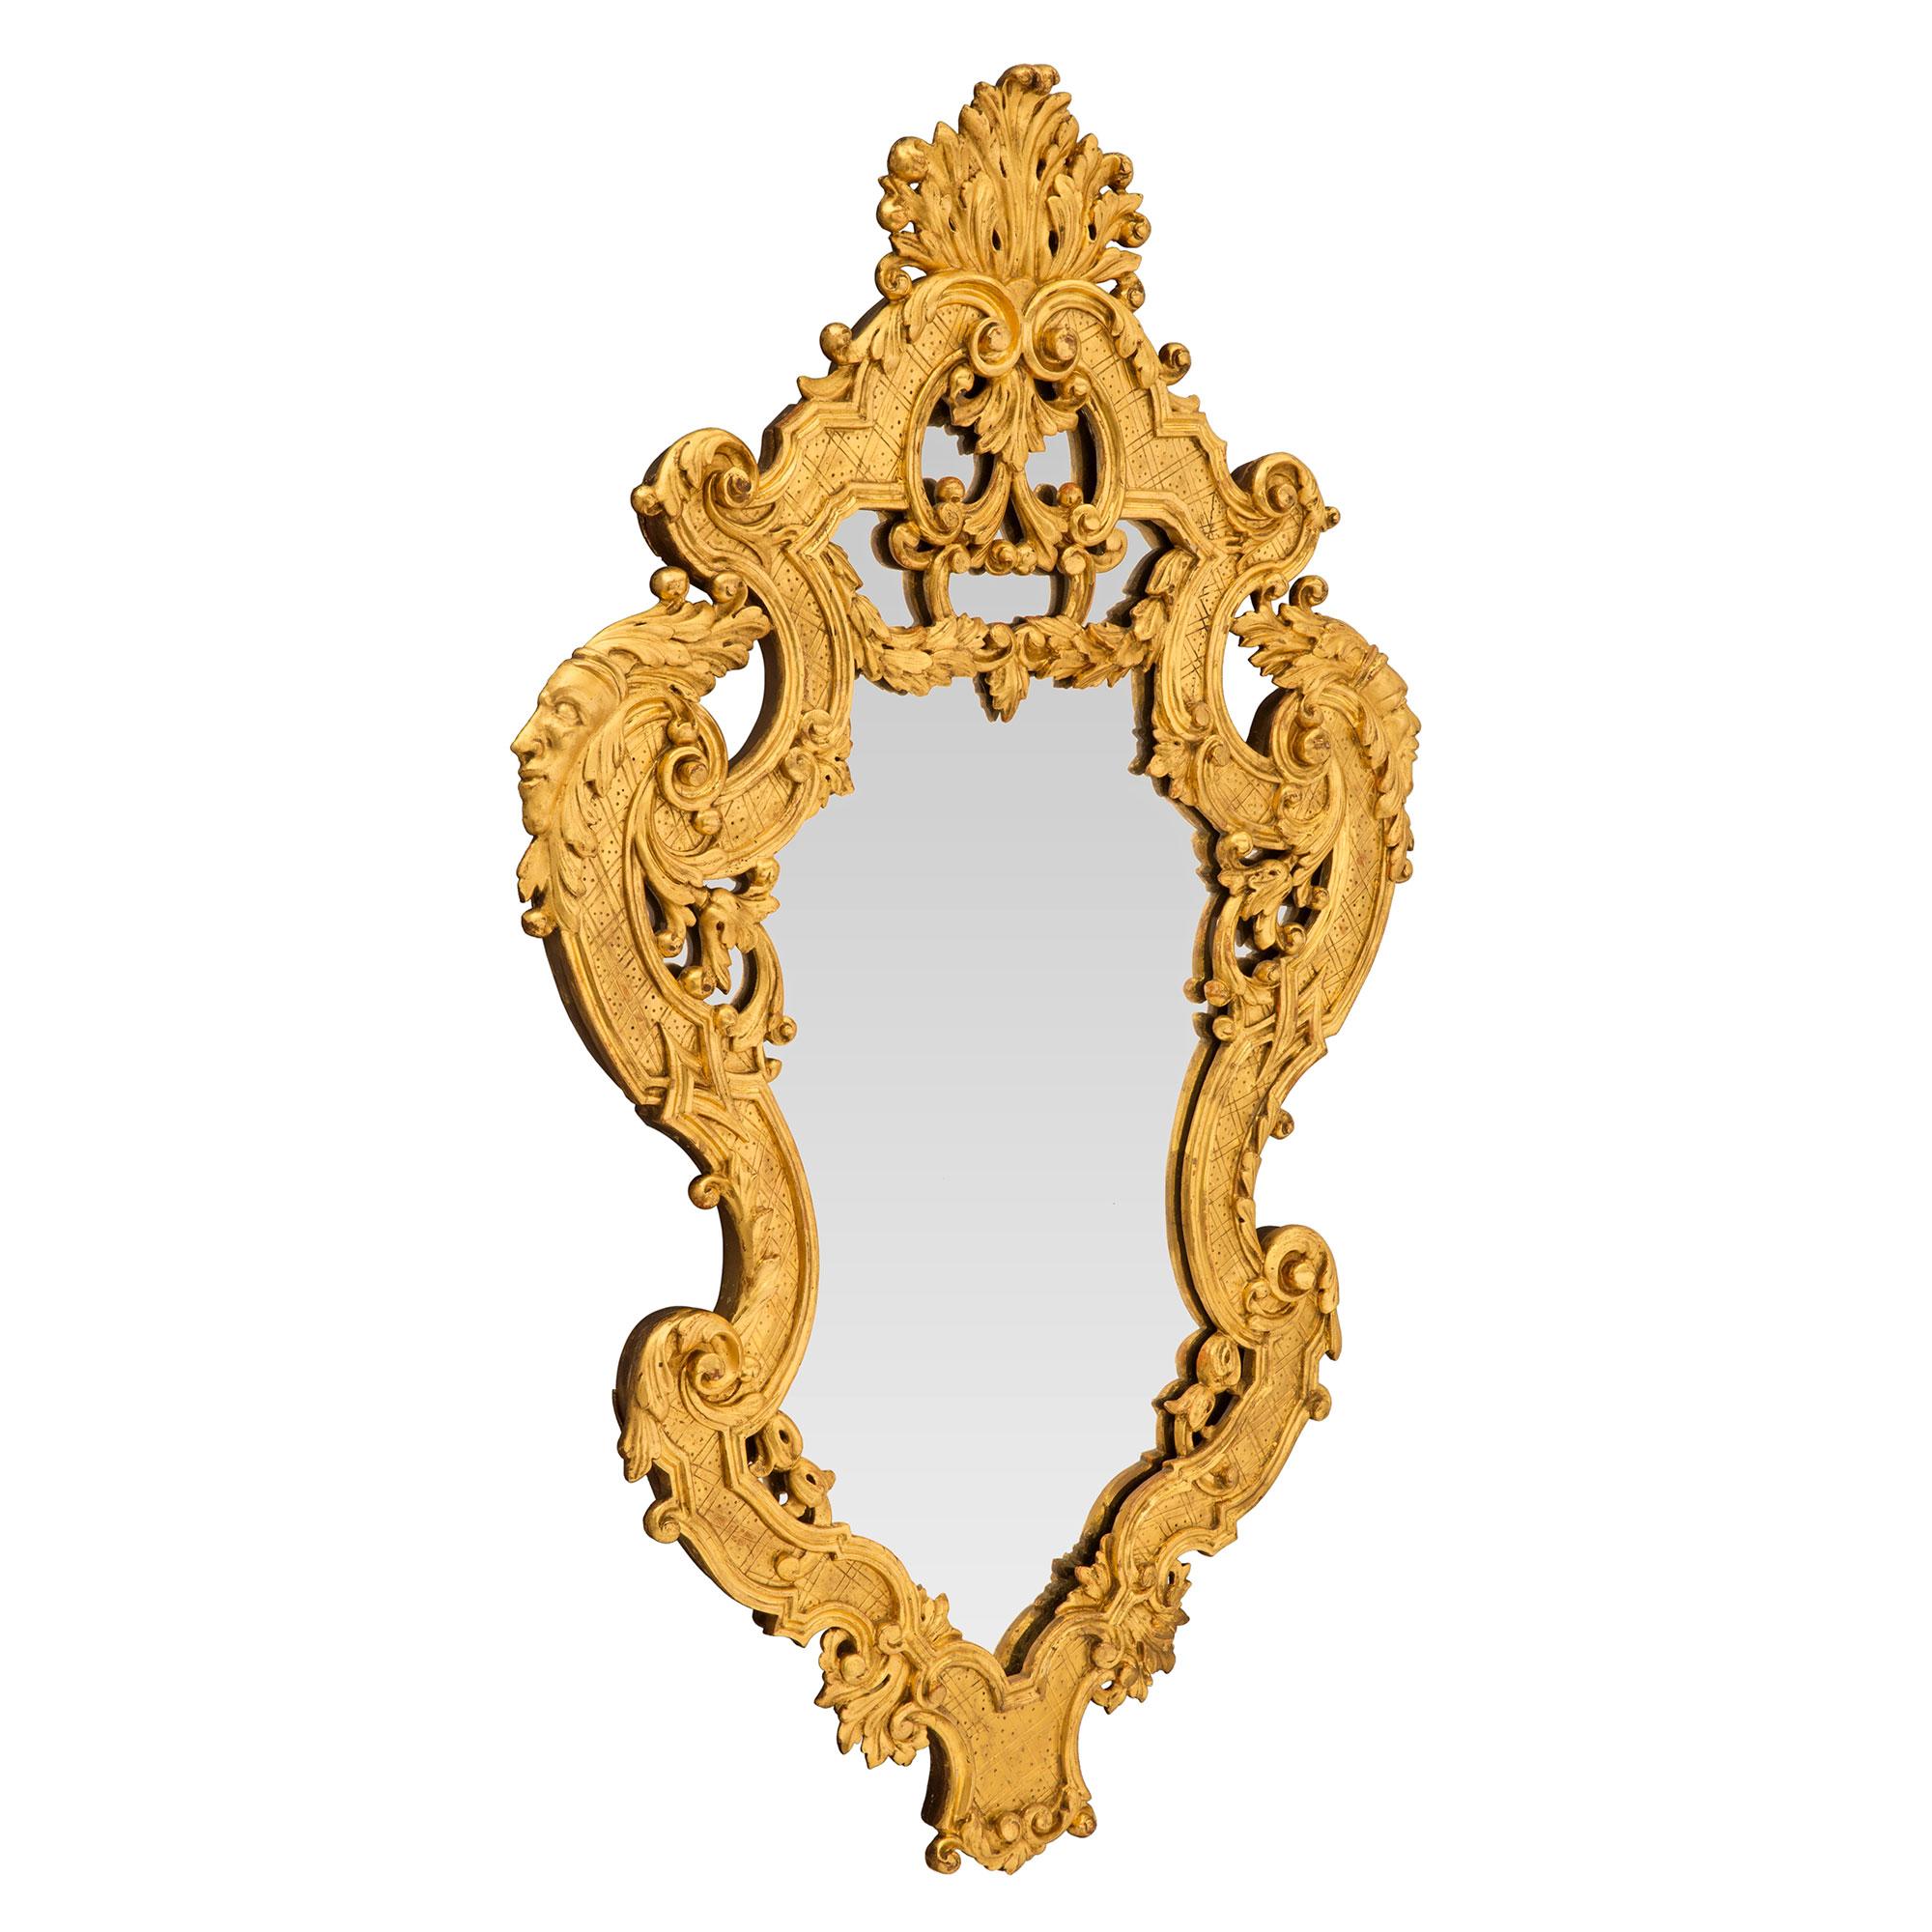 Une paire exquise de miroirs italiens du début du 19ème siècle en bois doré de la Régence. Les plaques de miroir originales sont placées à l'intérieur de mouvements étonnants et très décoratifs, richement enroulés et ornés de grandes feuilles